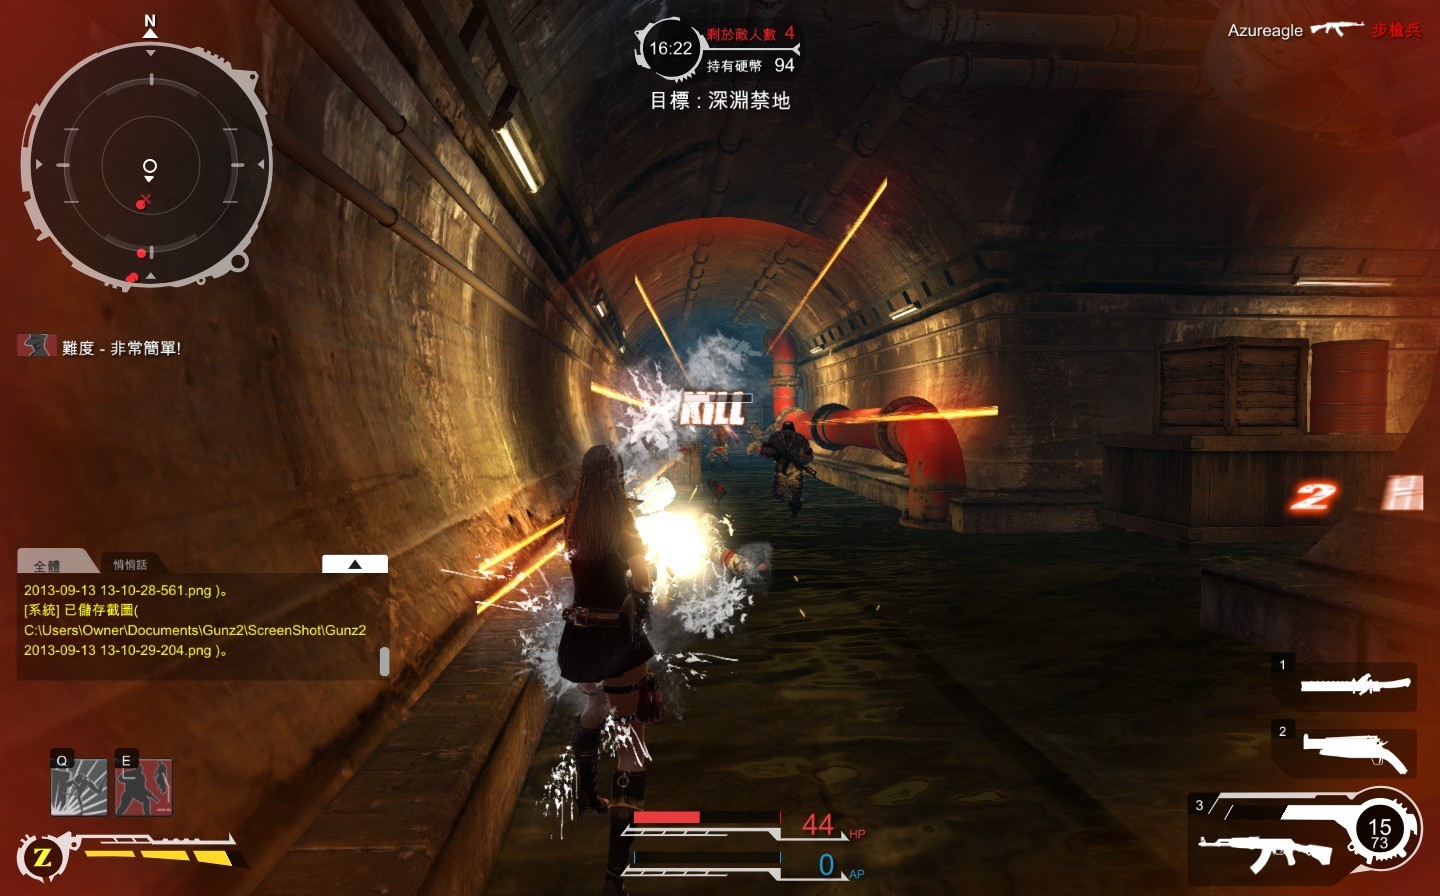 「AK突擊步槍」點射效果佳，玩家可遠距離點射敵人頭部爆擊對手，